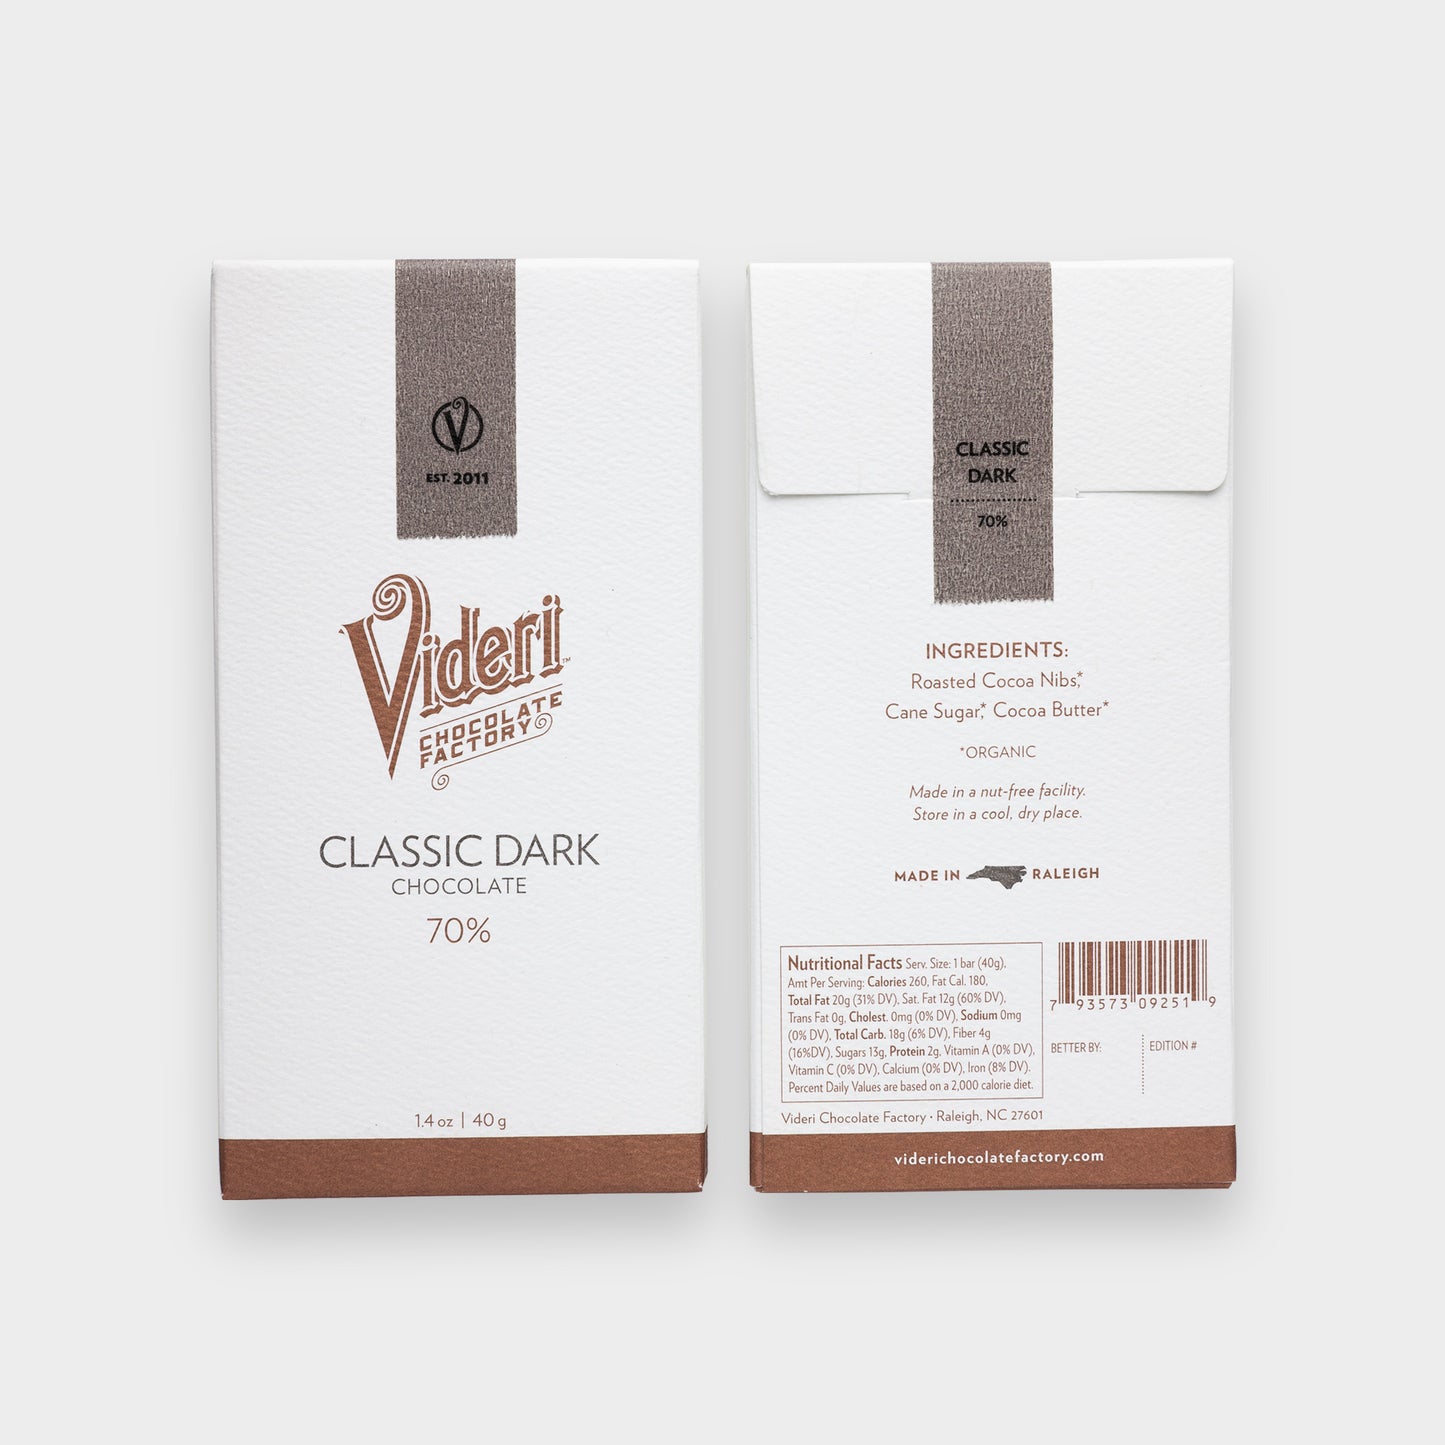 Videri - Classic Dark Chocolate